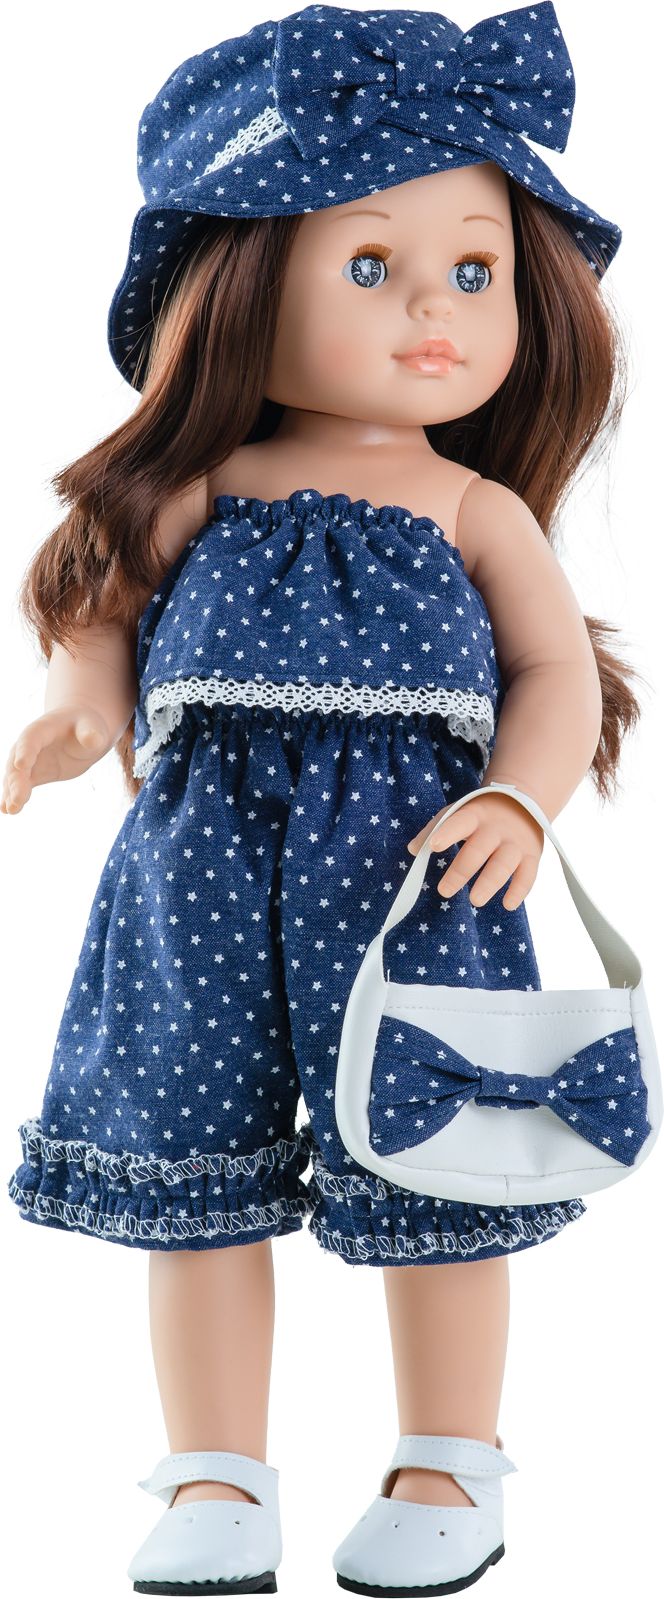 Realistická panenka Emily v letním overalu od firmy Paola Reina - obrázek 1